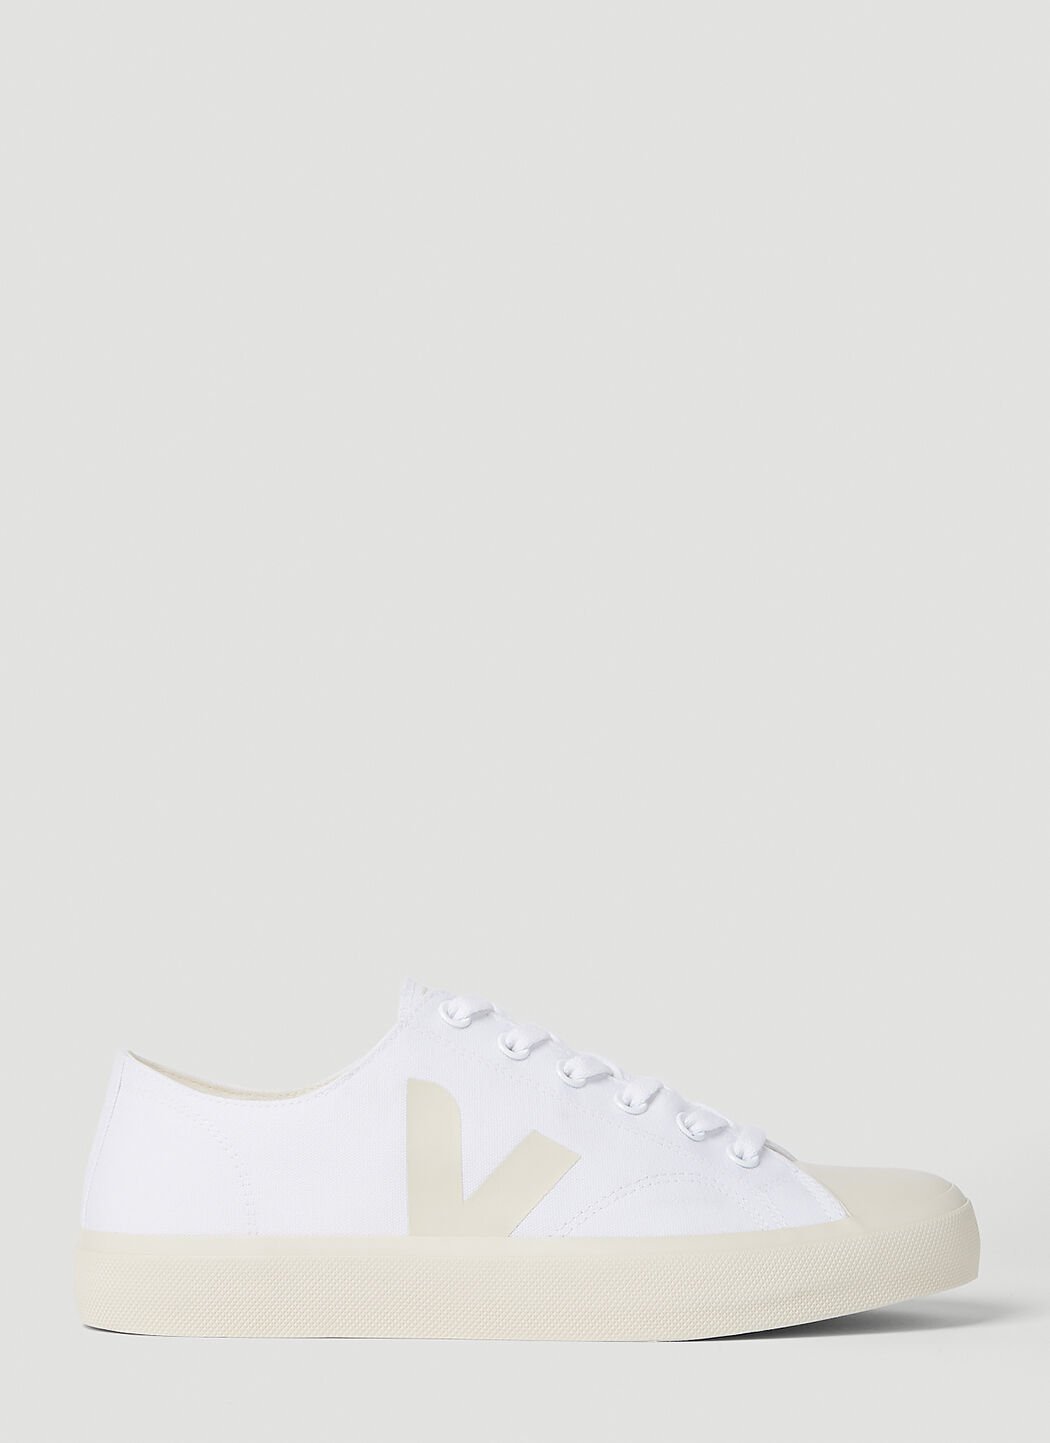 Veja Wata II Sneakers White vej0356032